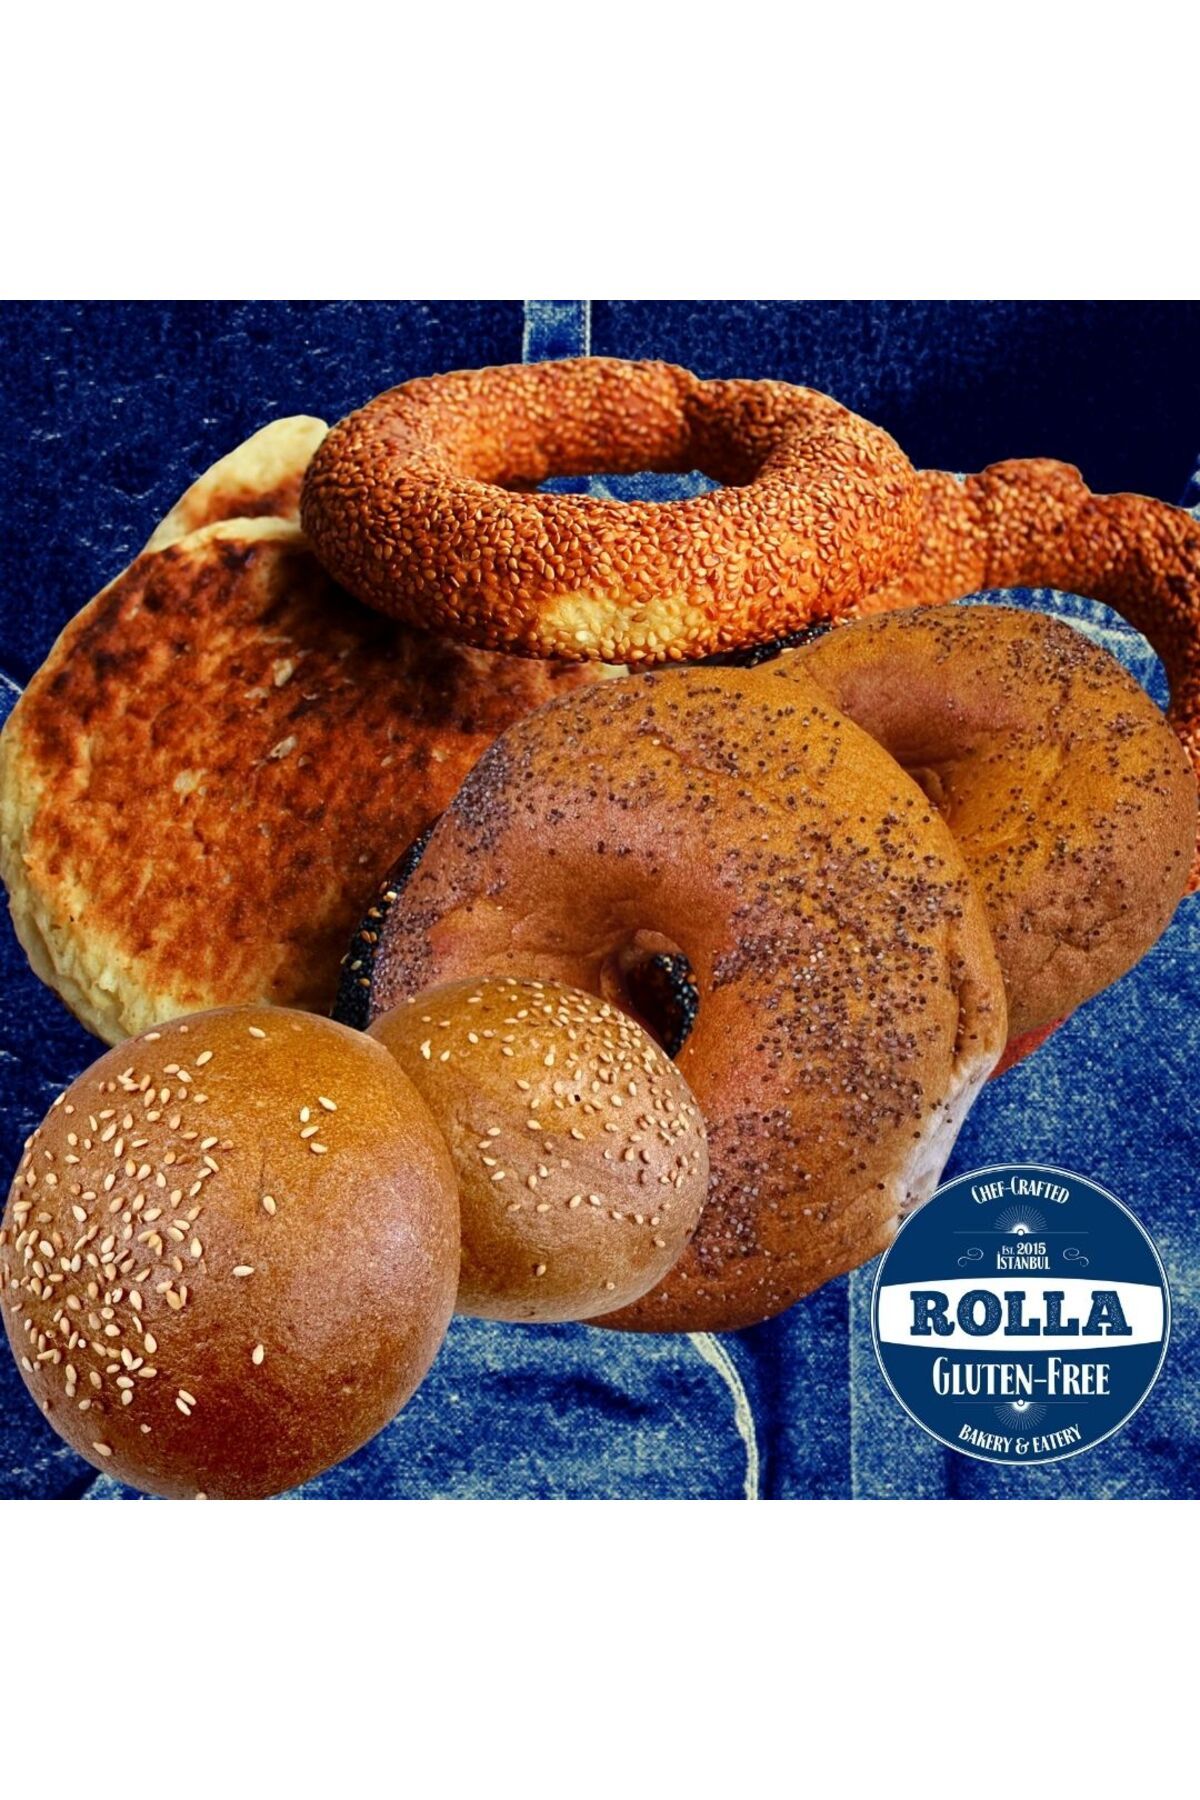 Rolla Gluten Free Glutensiz Tanışma Paketi -2'şer Adet Simit, Bazlama, Bagel, Burger Ekmeği